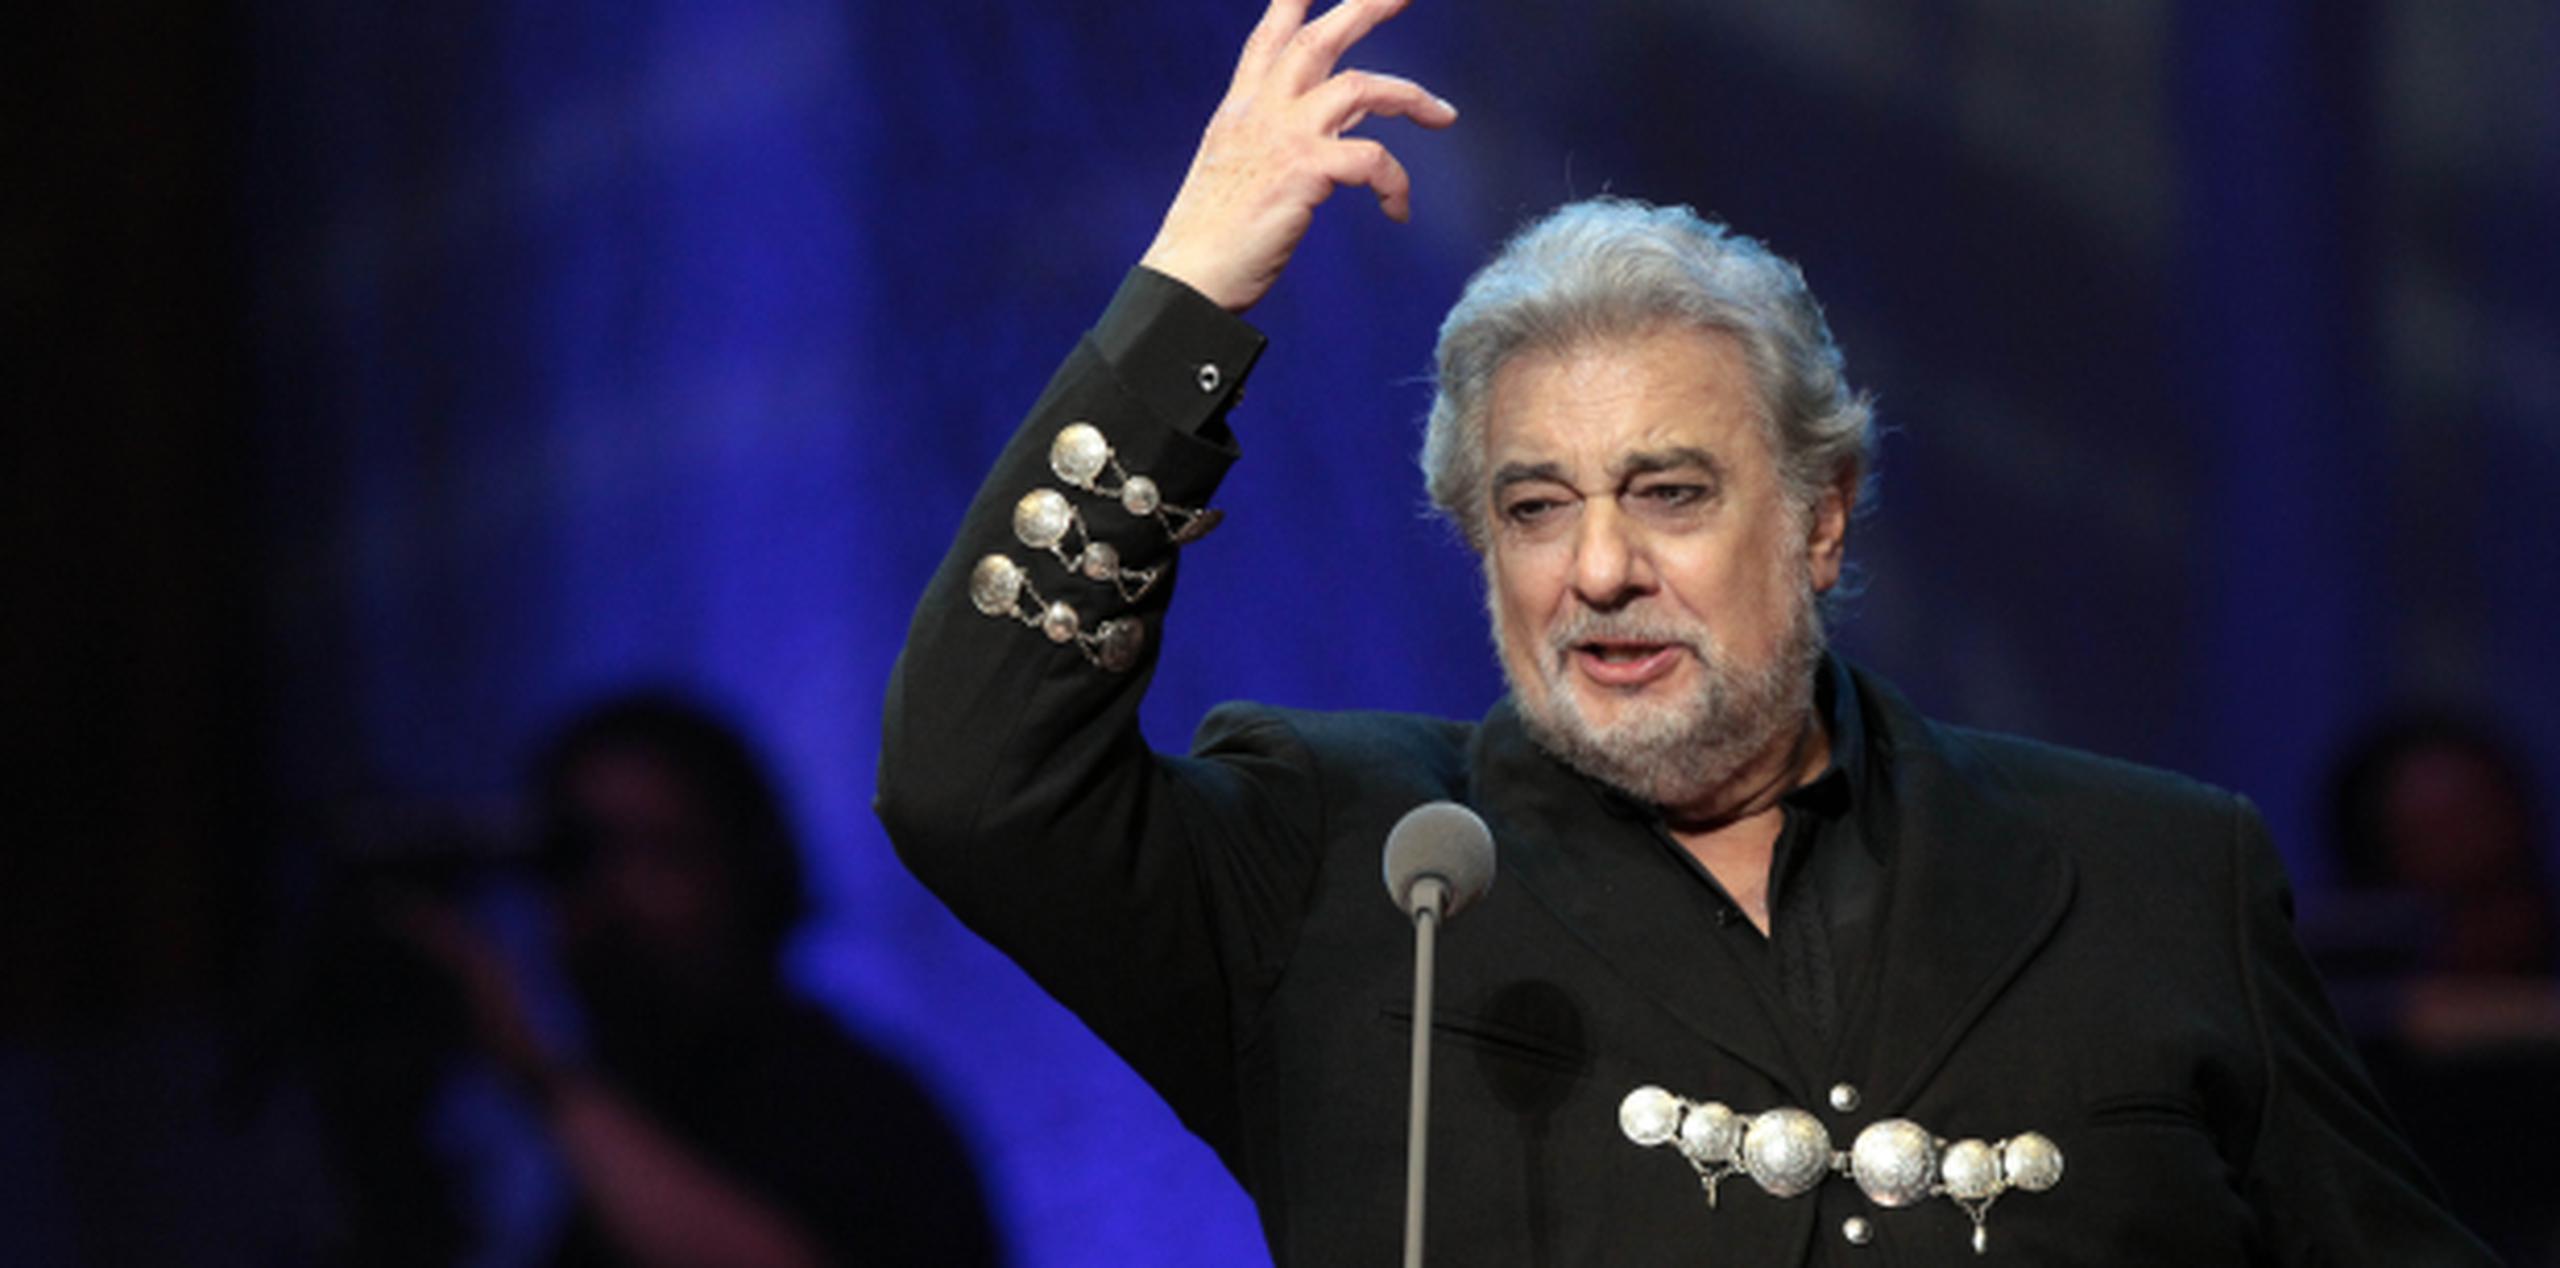 Se espera que el tenor español de 72 años se recupere por completo, dijo su publicista. (Archivo)